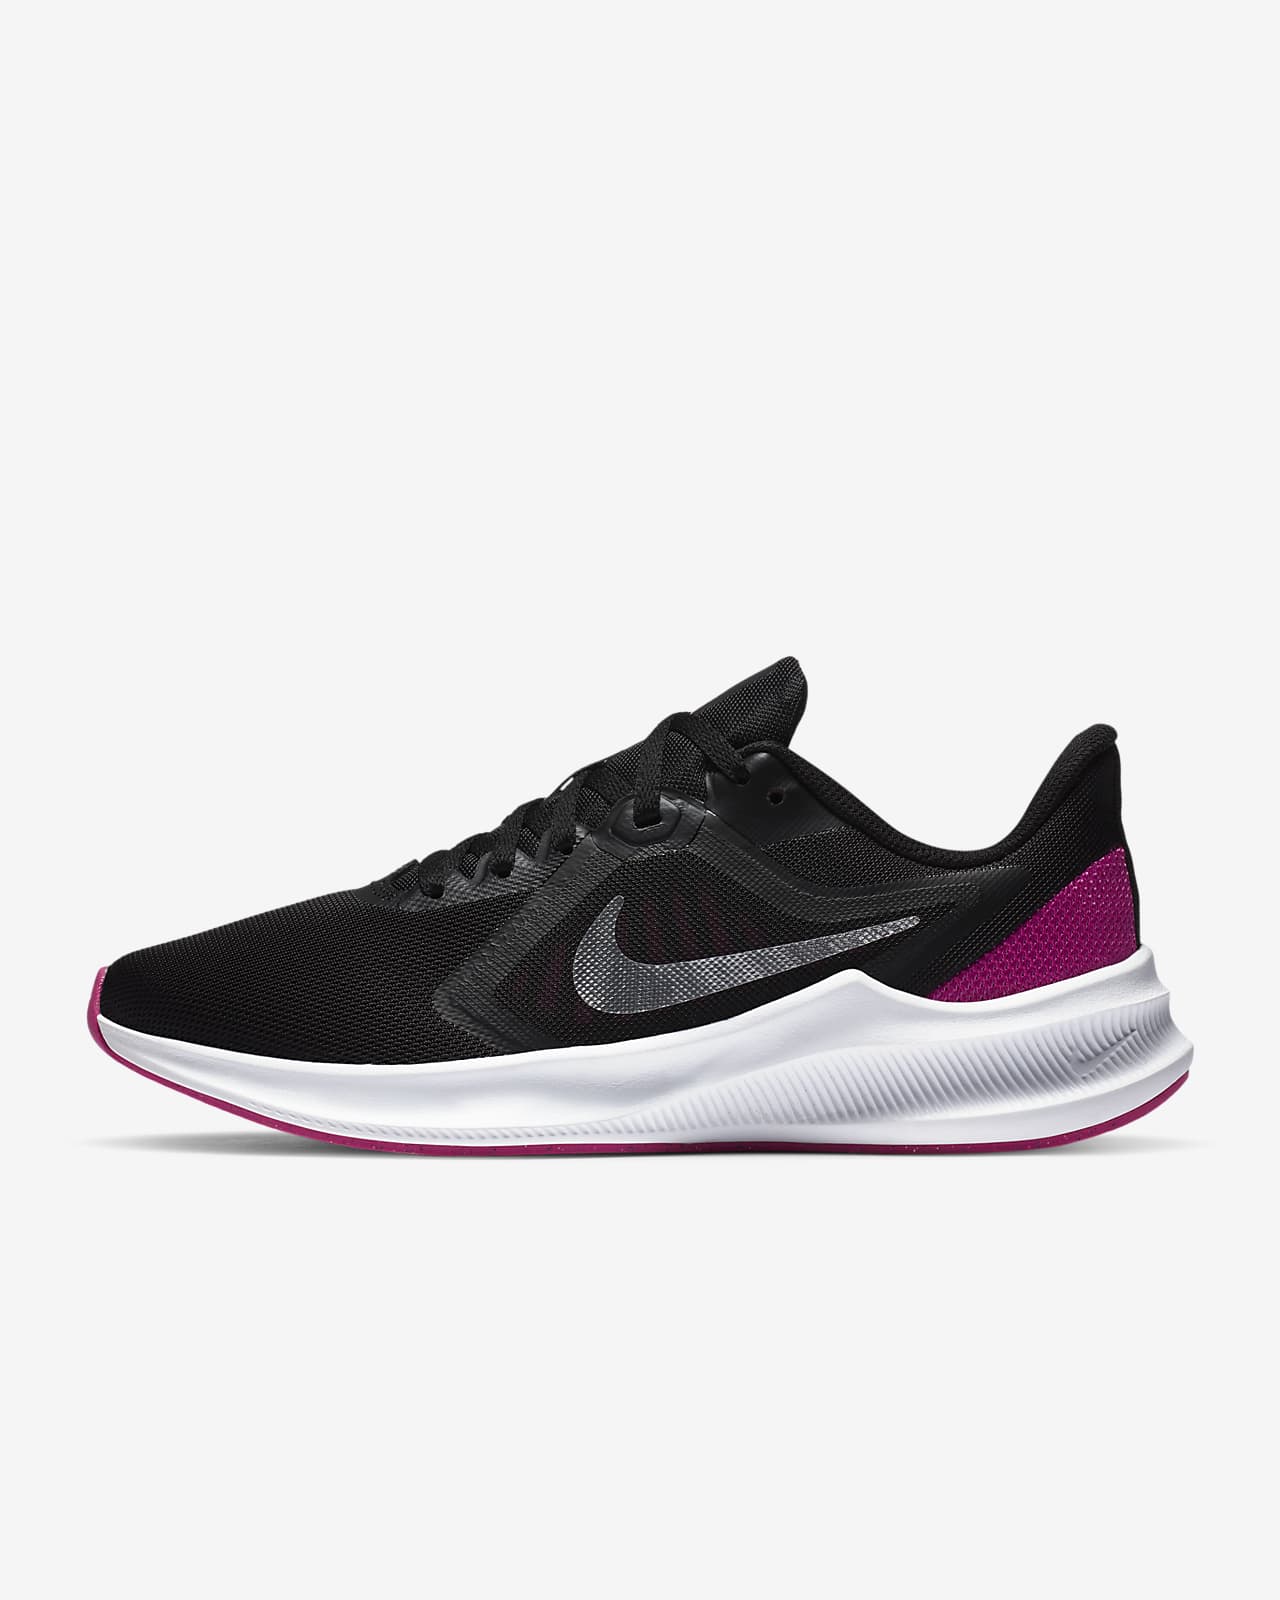 Nike Downshifter 10 Women's Road Running Shoes